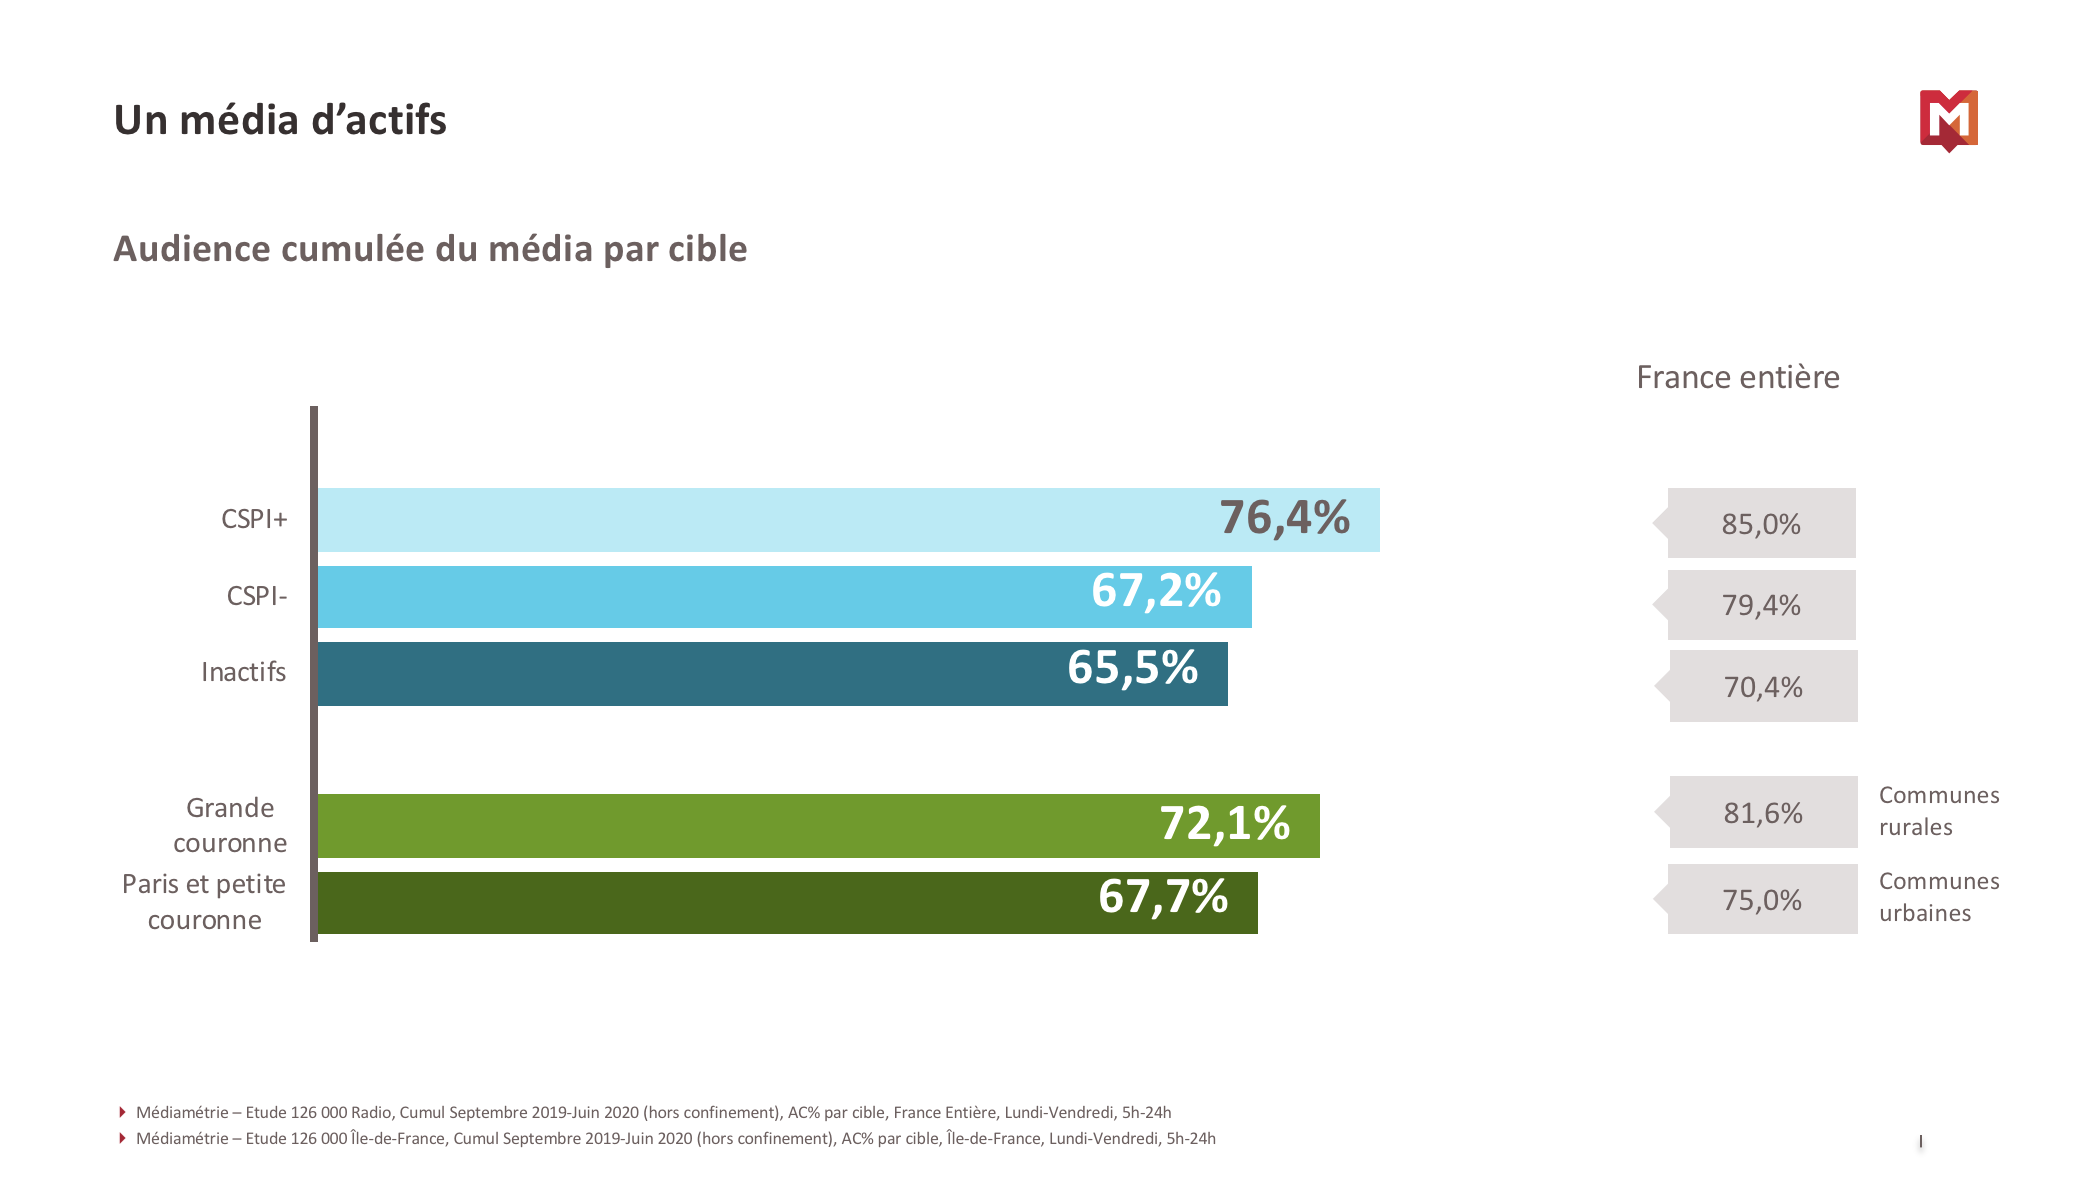 RadioTour : Médiamétrie dévoile des chiffres exclusifs sur les audiences en Île-de-France